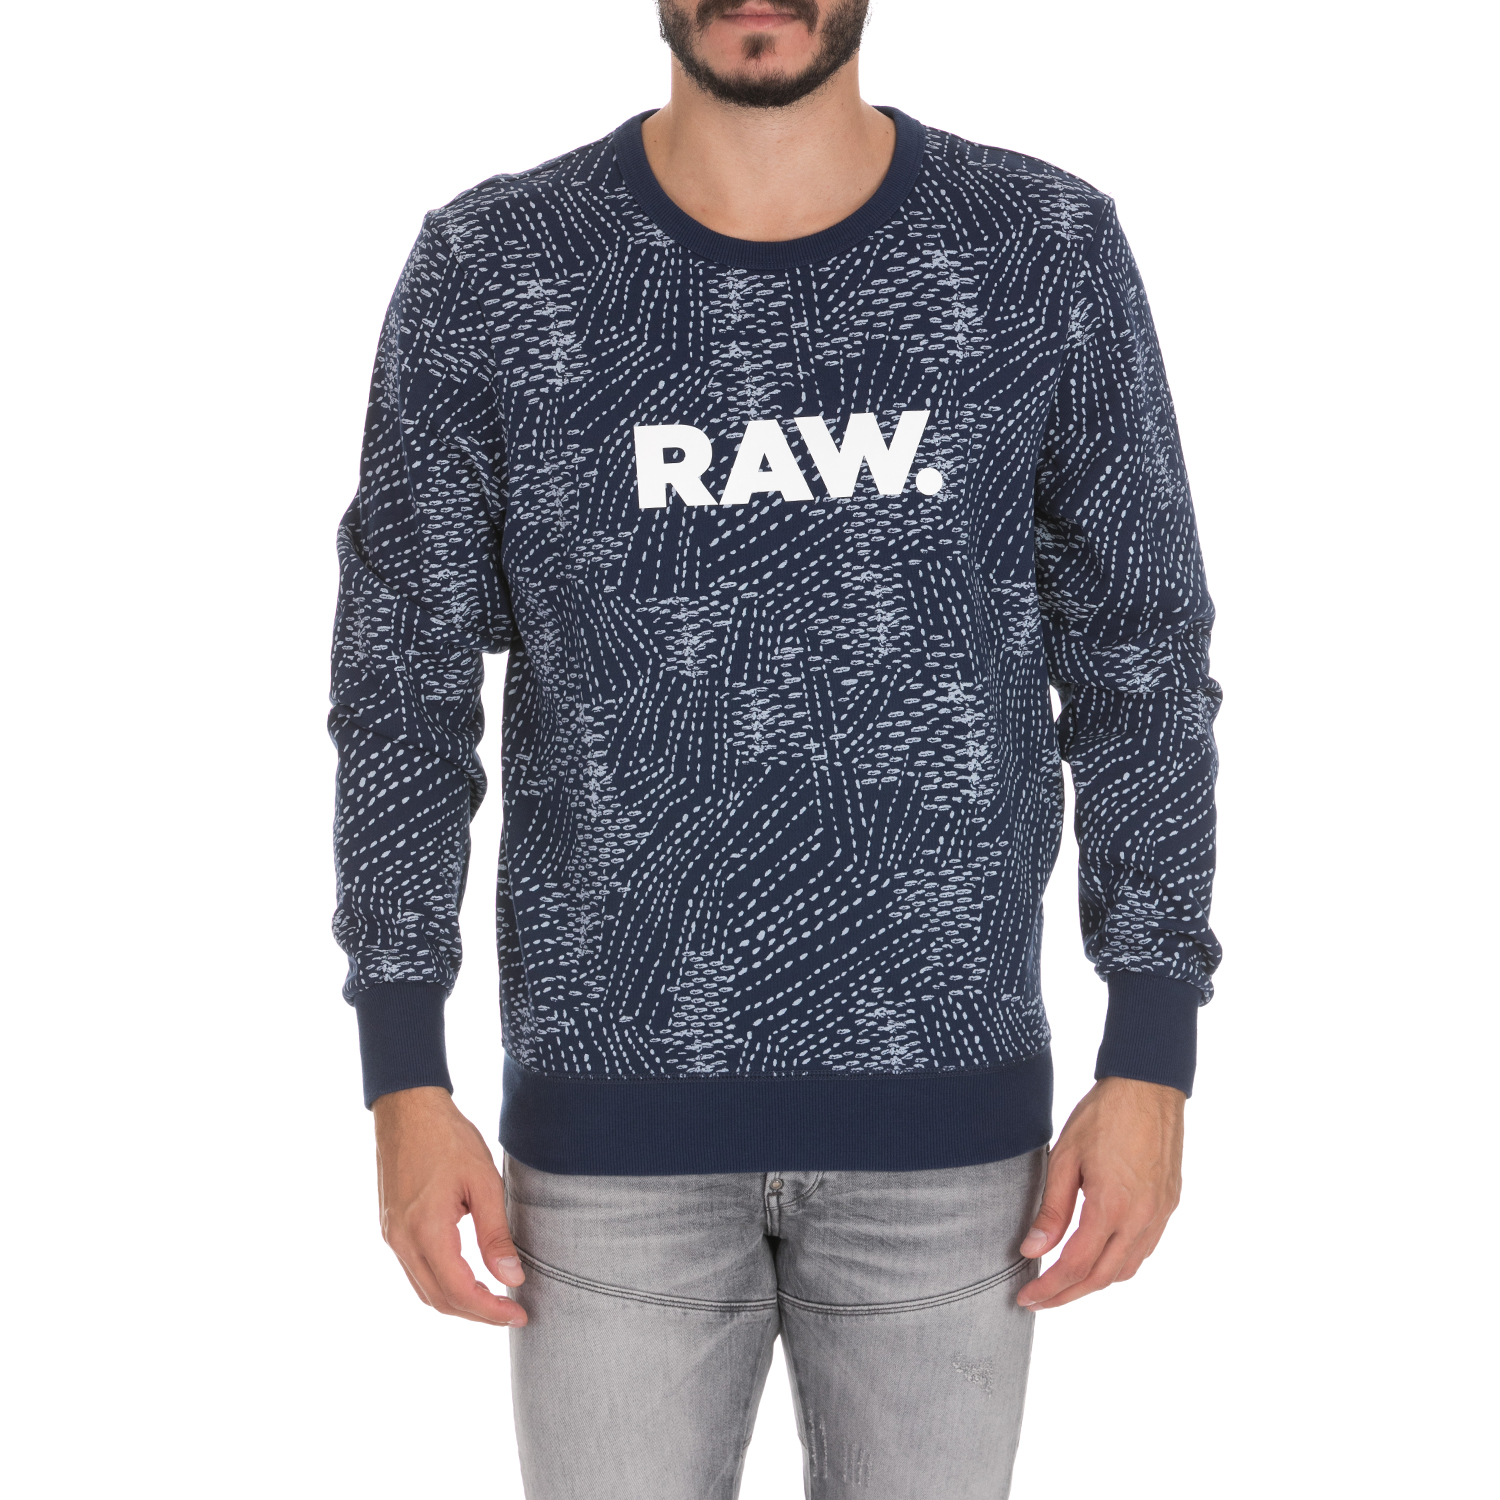 G-STAR RAW - Ανδρική φούτερ μπλούζα G-STAR RAW μπλε Ανδρικά/Ρούχα/Φούτερ/Μπλούζες